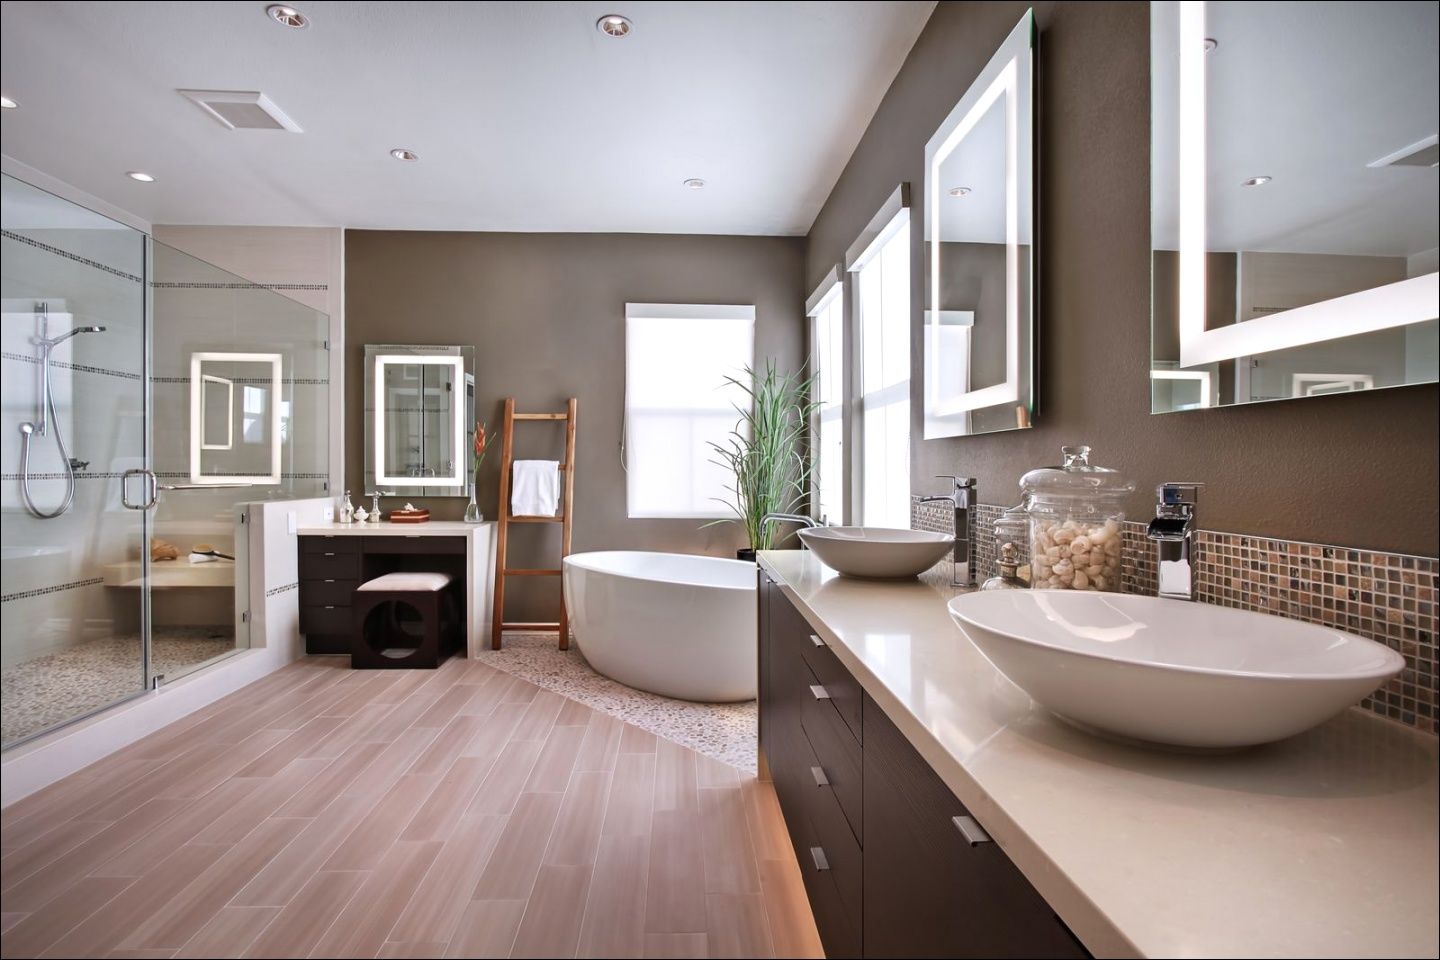 Màu sắc trung tính mang tới không gian nhà tắm thêm ấm áp và tinh tế